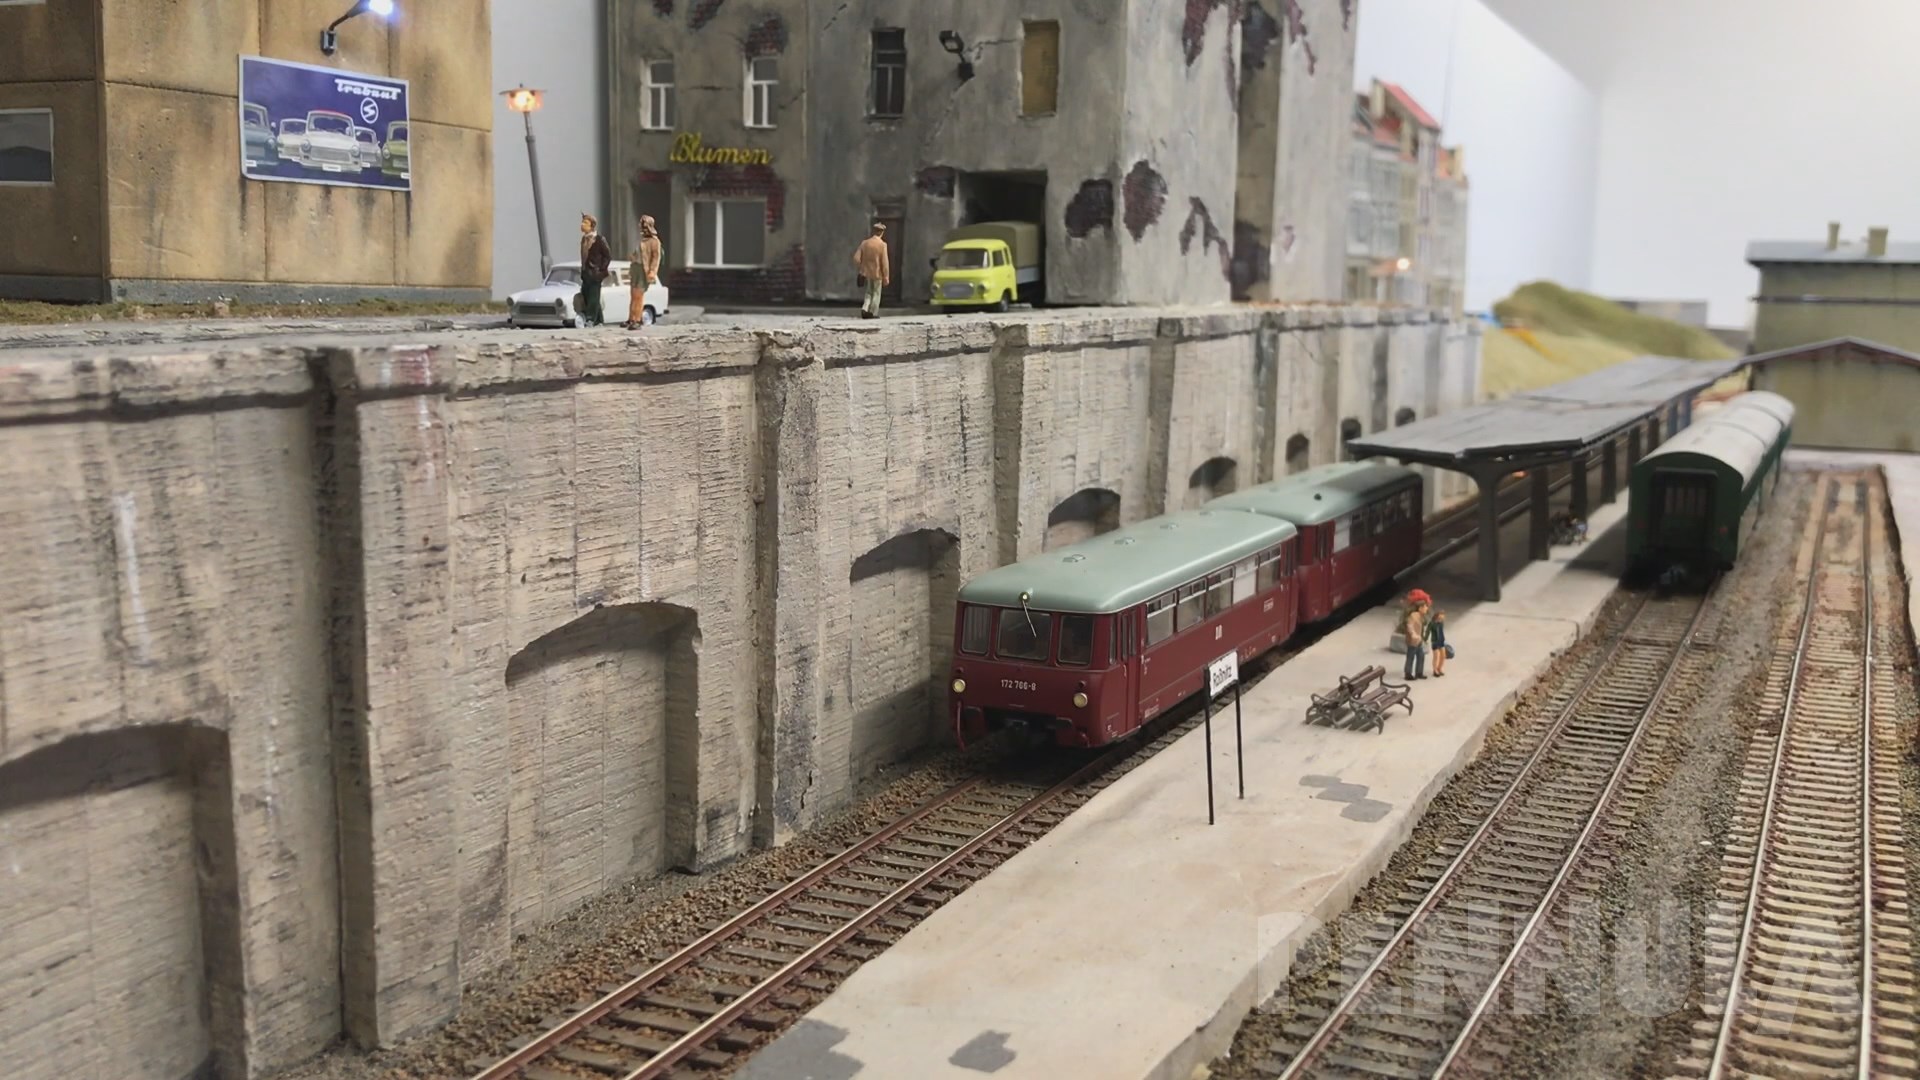 Bahnhof Roßnitz - Piko Modellbahn mit Lokomotiven und Modellzügen der Deutschen Reichsbahn